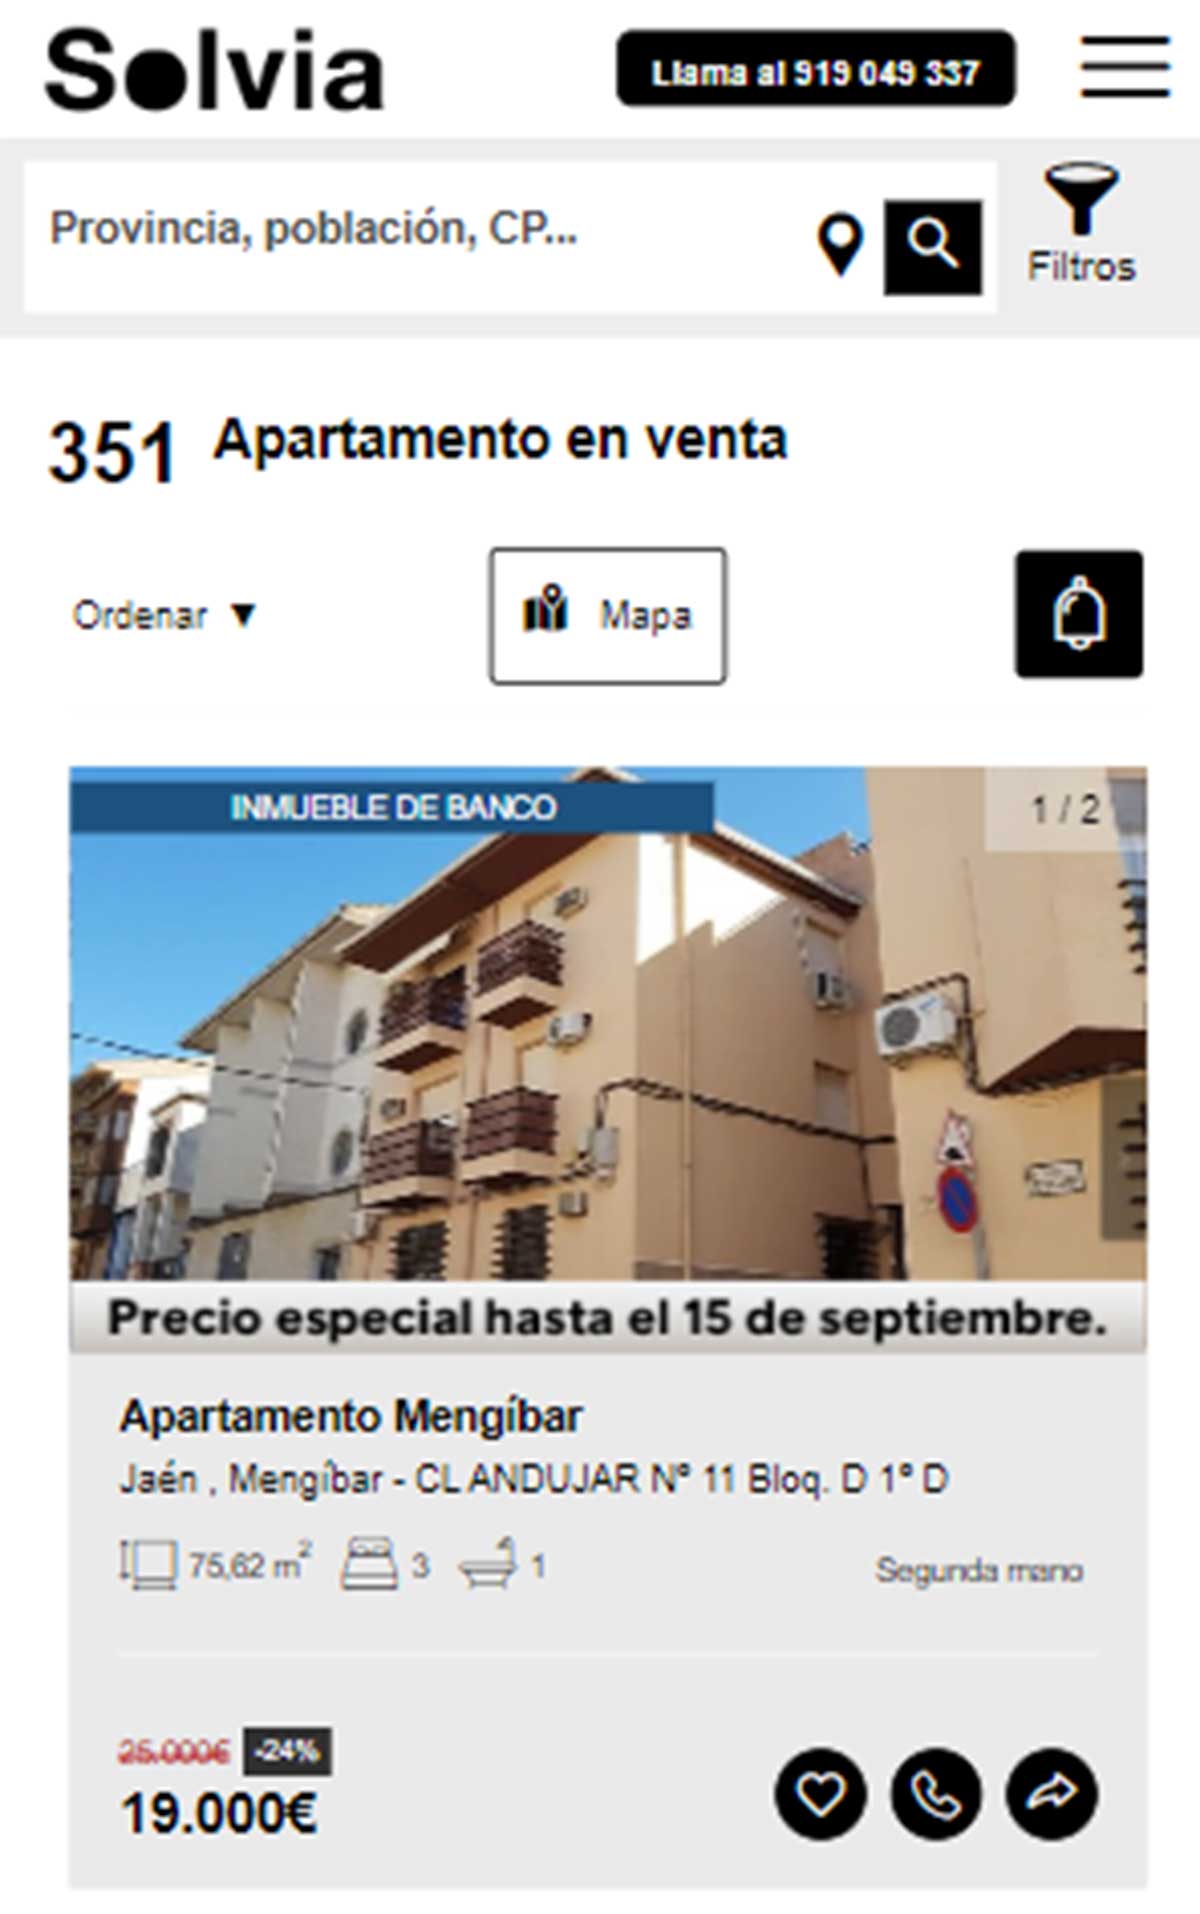 Apartamento a la venta por 19.000 euros